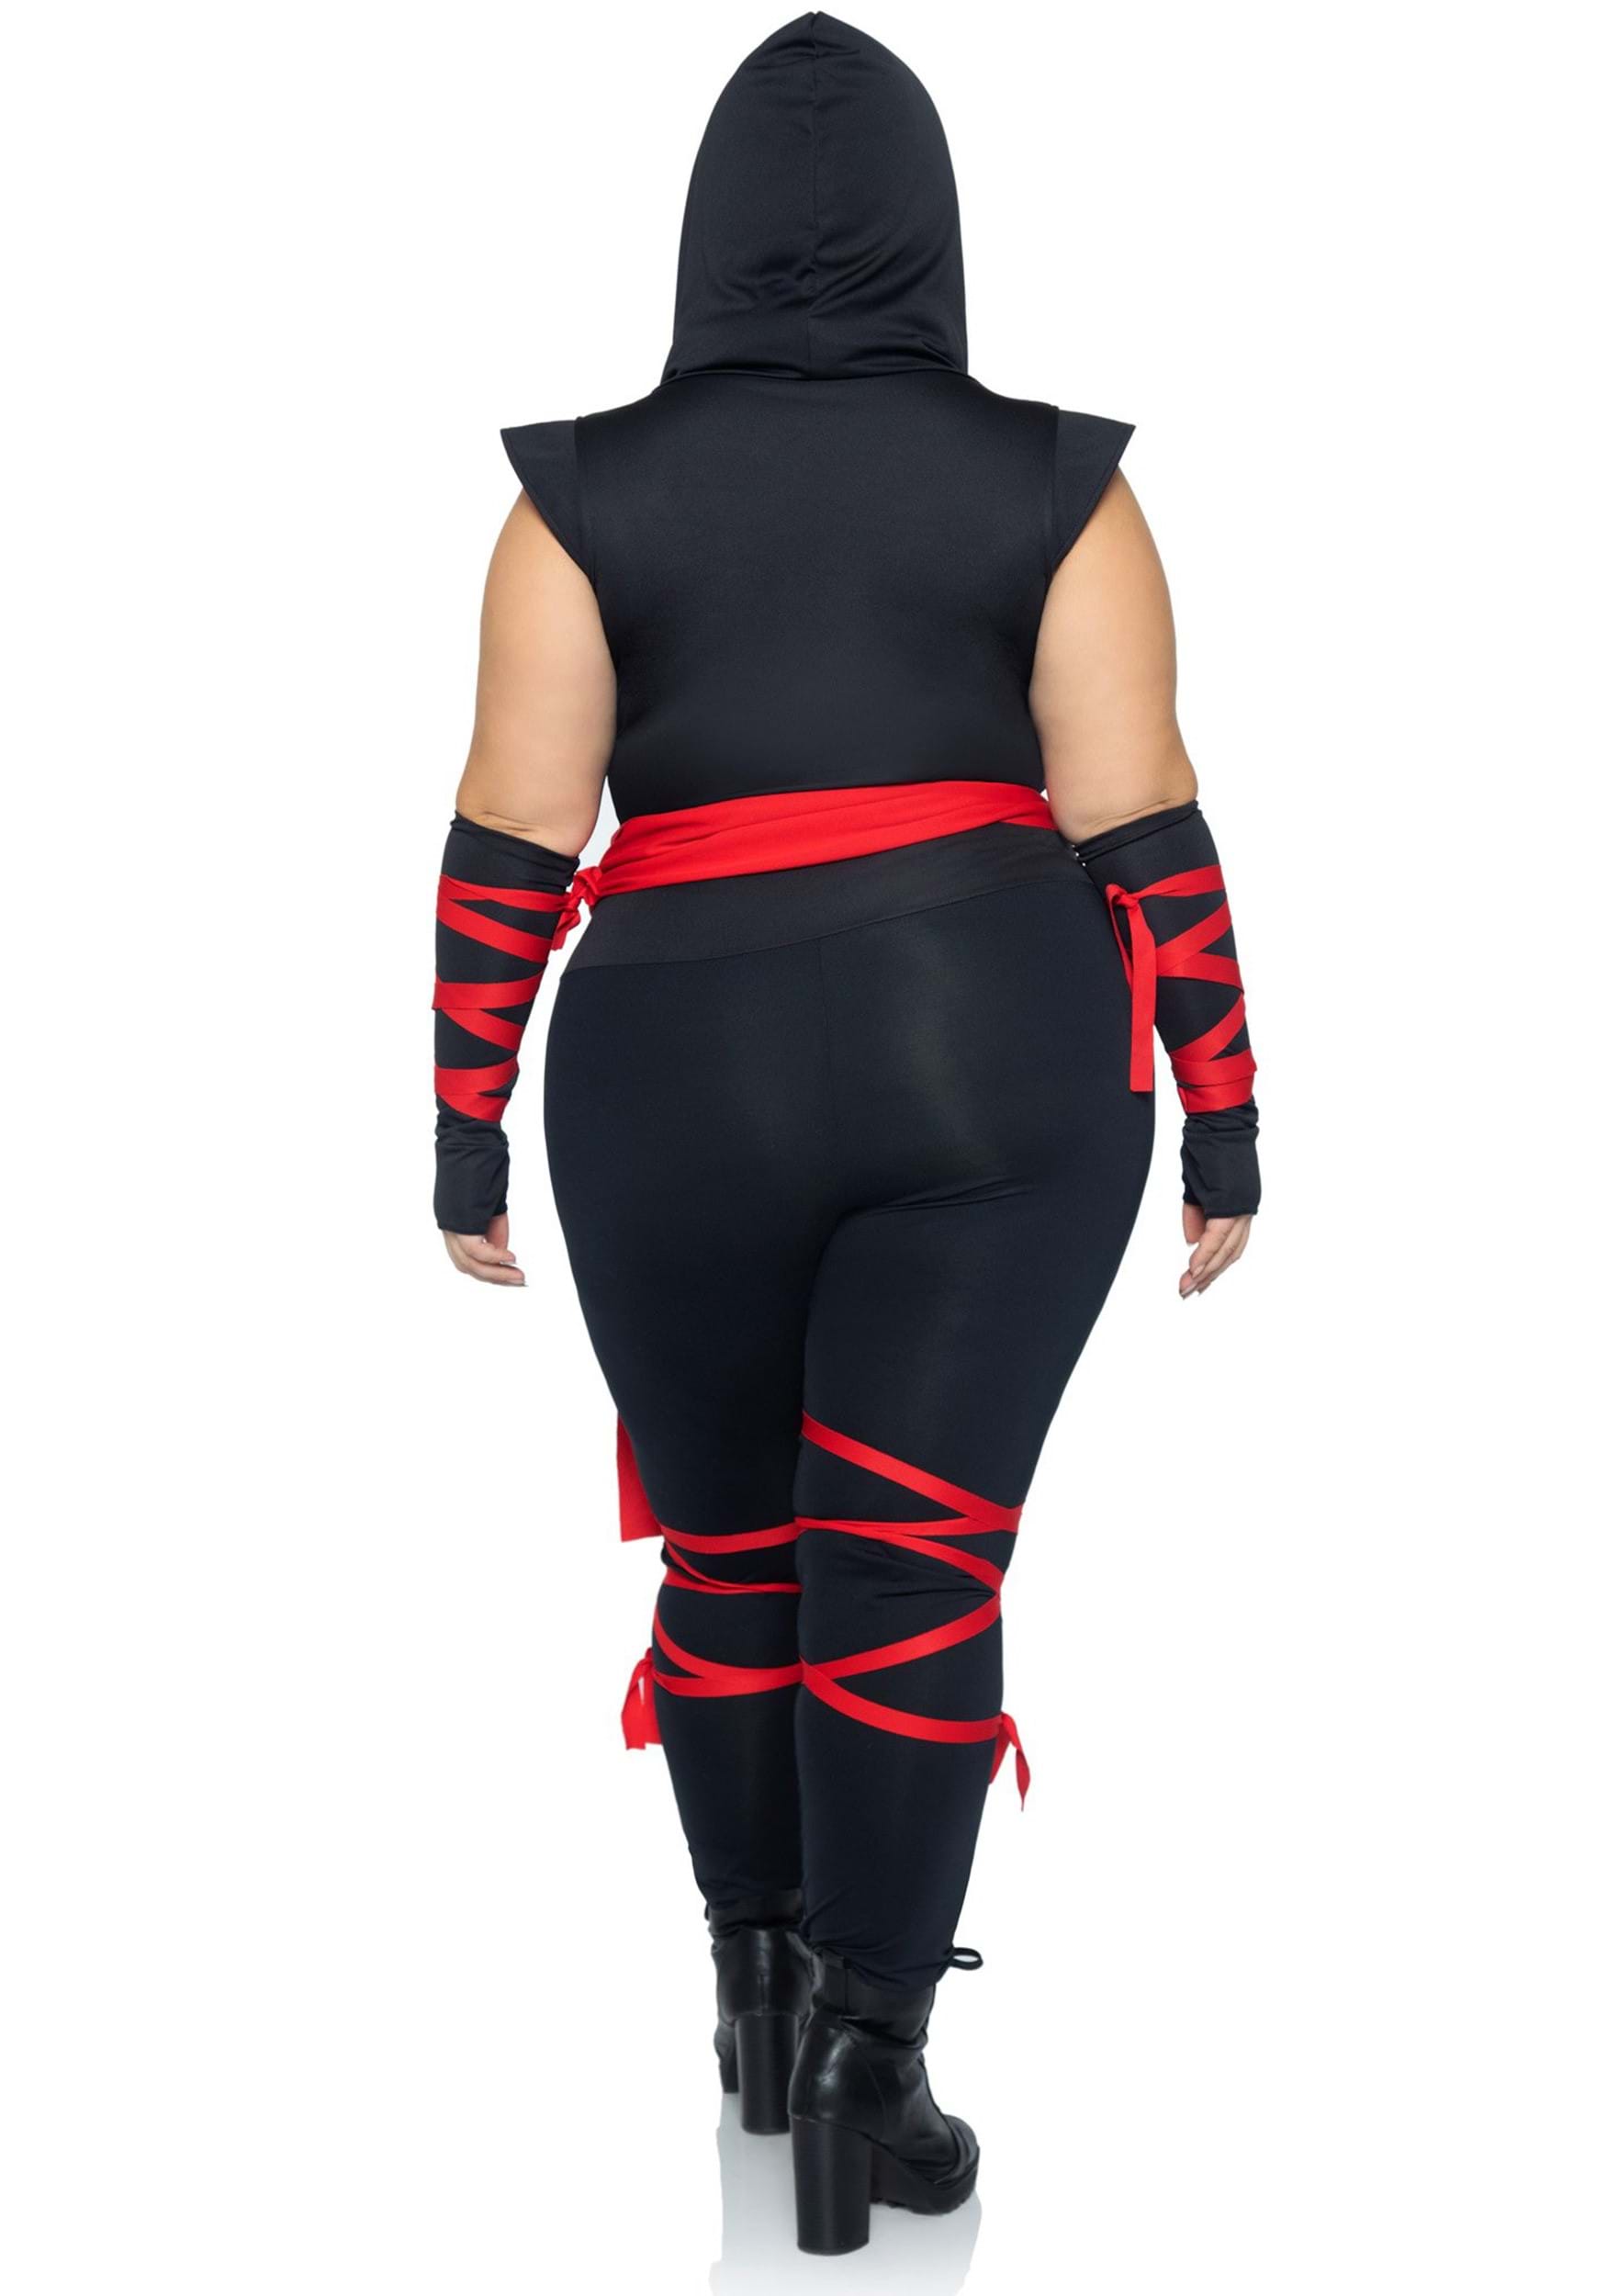 Plus Size Sexy Deadly Ninja Fancy Dress Costume For Women